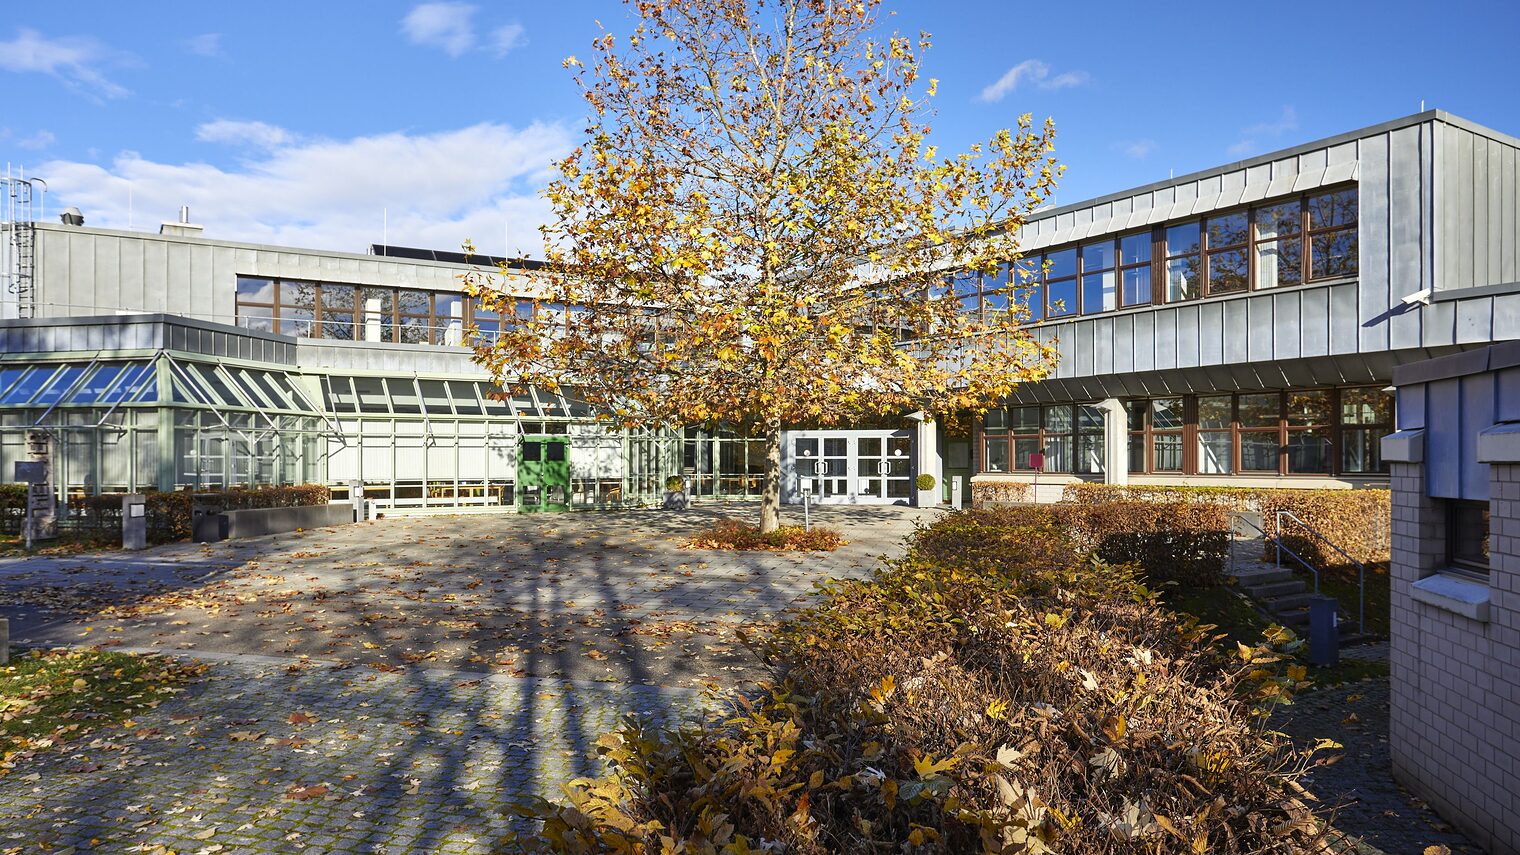 Weil qualifizierte Aus- und Weiterbildung nur mit moderner Infrastruktur zu leisten ist, hat die Vollversammlung den Ausbau der Bildungsakademie der Handwerkskammer in Stuttgart Weilimdorf angestoßen.